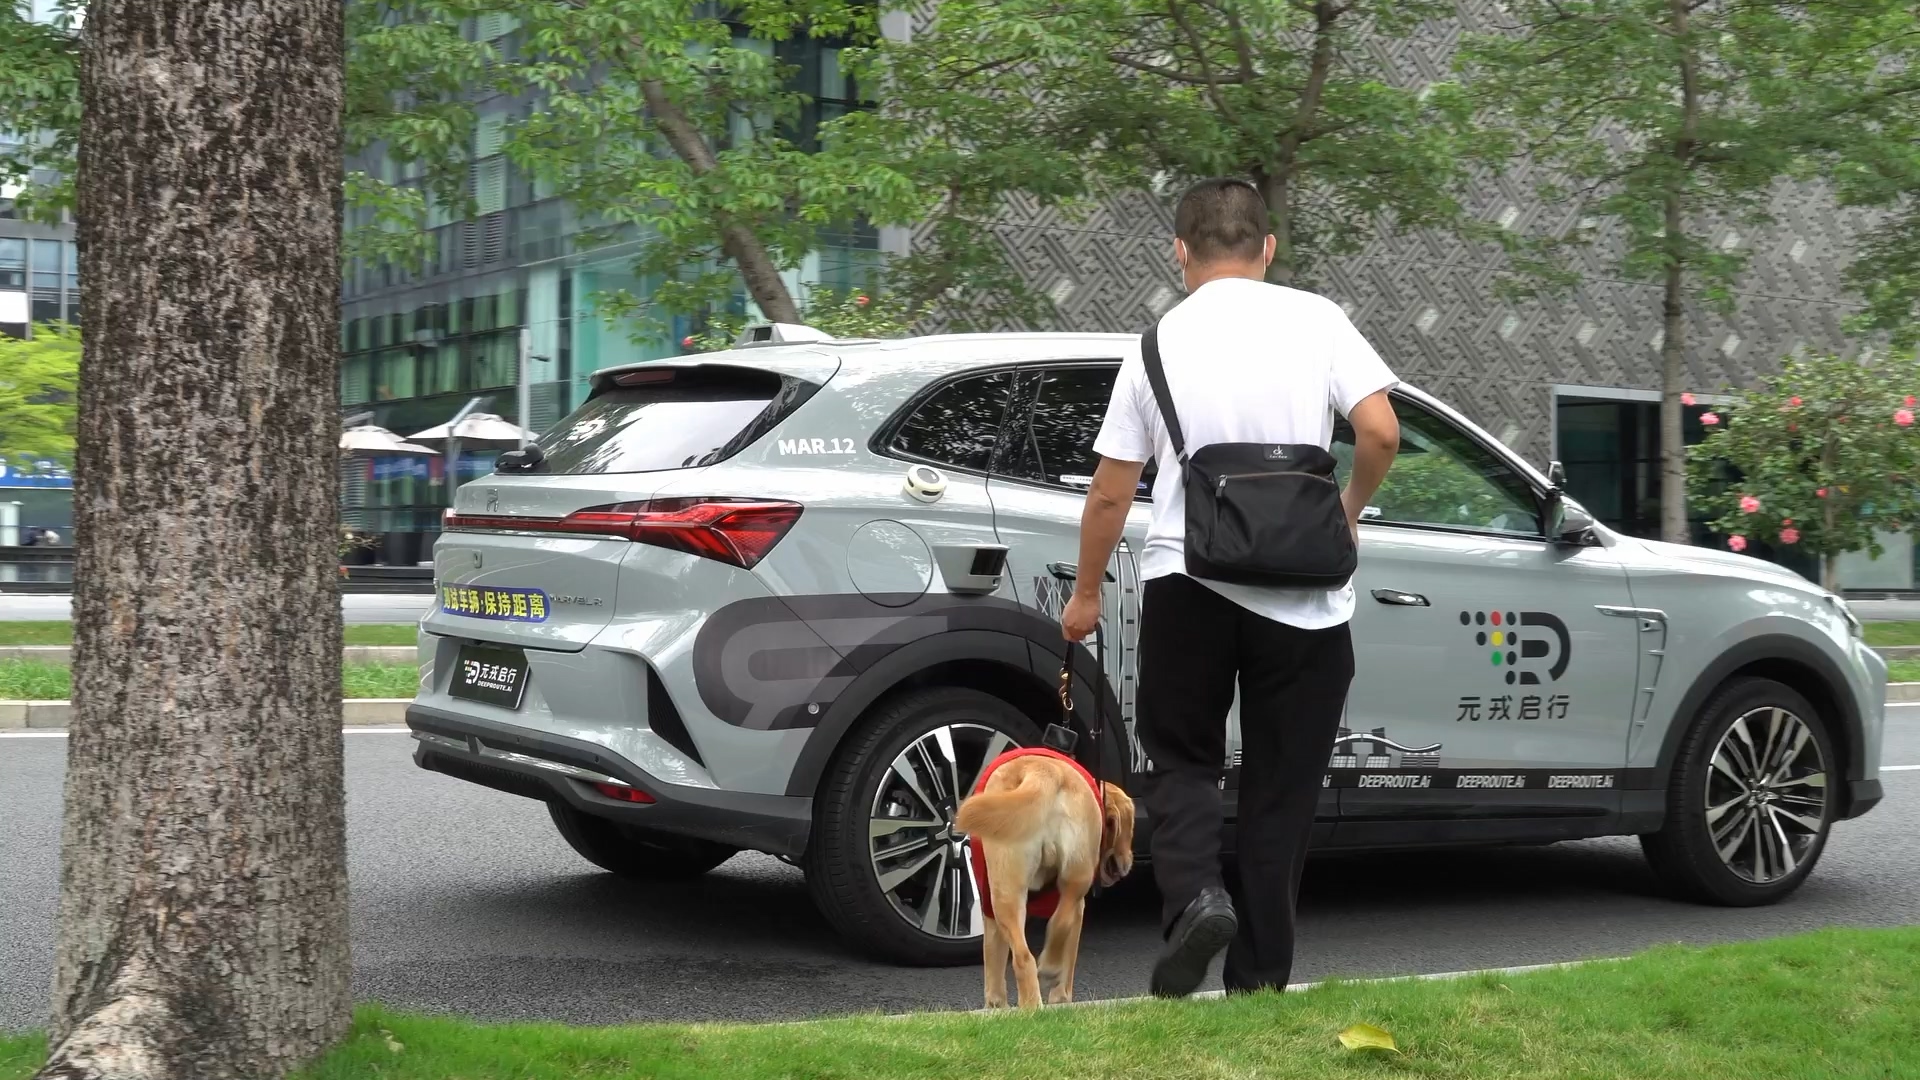 伴随着车辆自带的语音提示，么传锡携导盲犬顺利上车.jpg